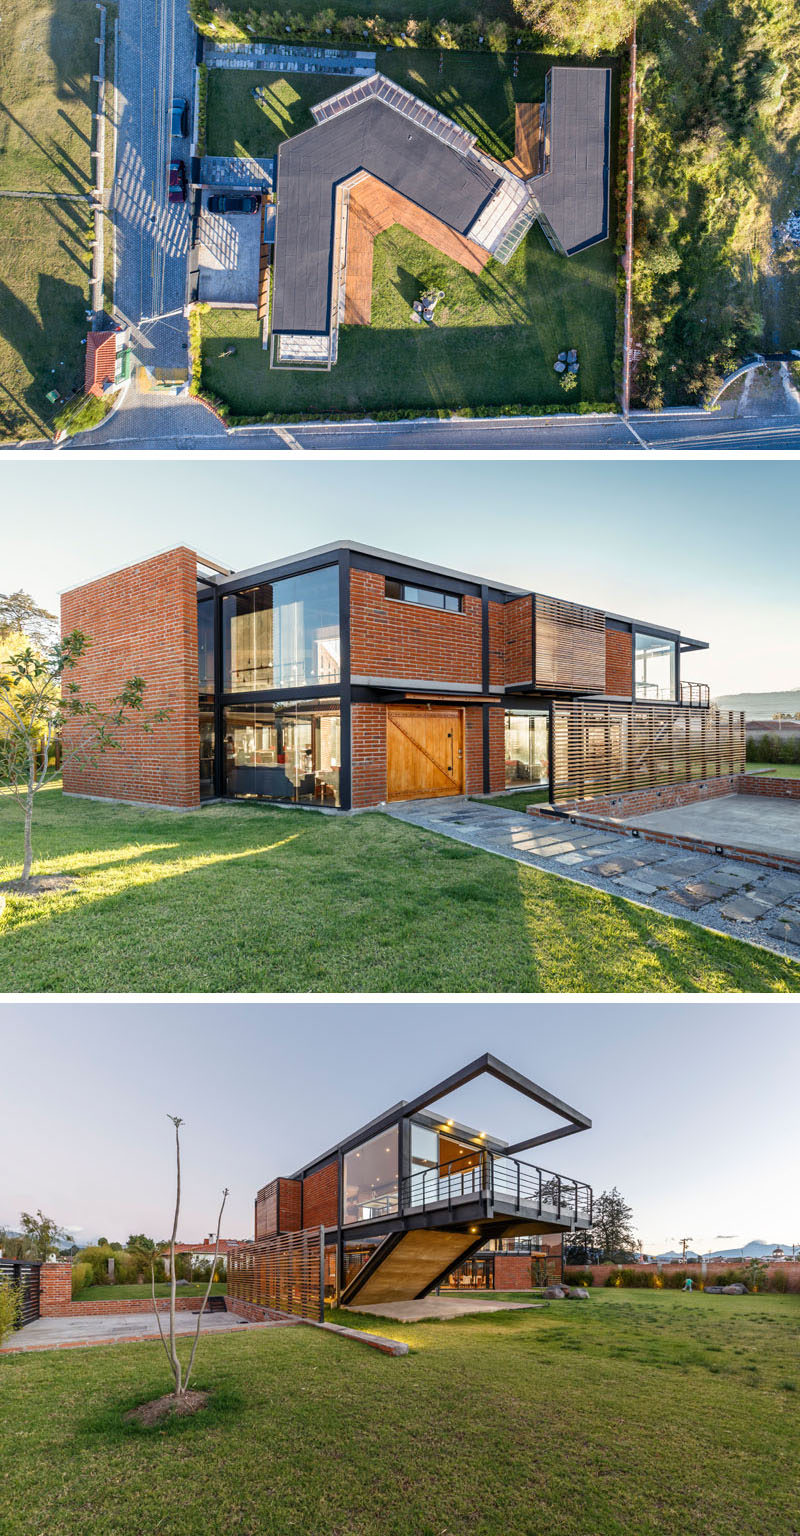  Архитектурная фирма Estudio A0 спроектировала дом из кирпича, стекла и стали в Санголки, Эквадор, в котором есть два павильона: один для клиента, другой - для его родителей. #ModernArchitecture #ModernHouse 